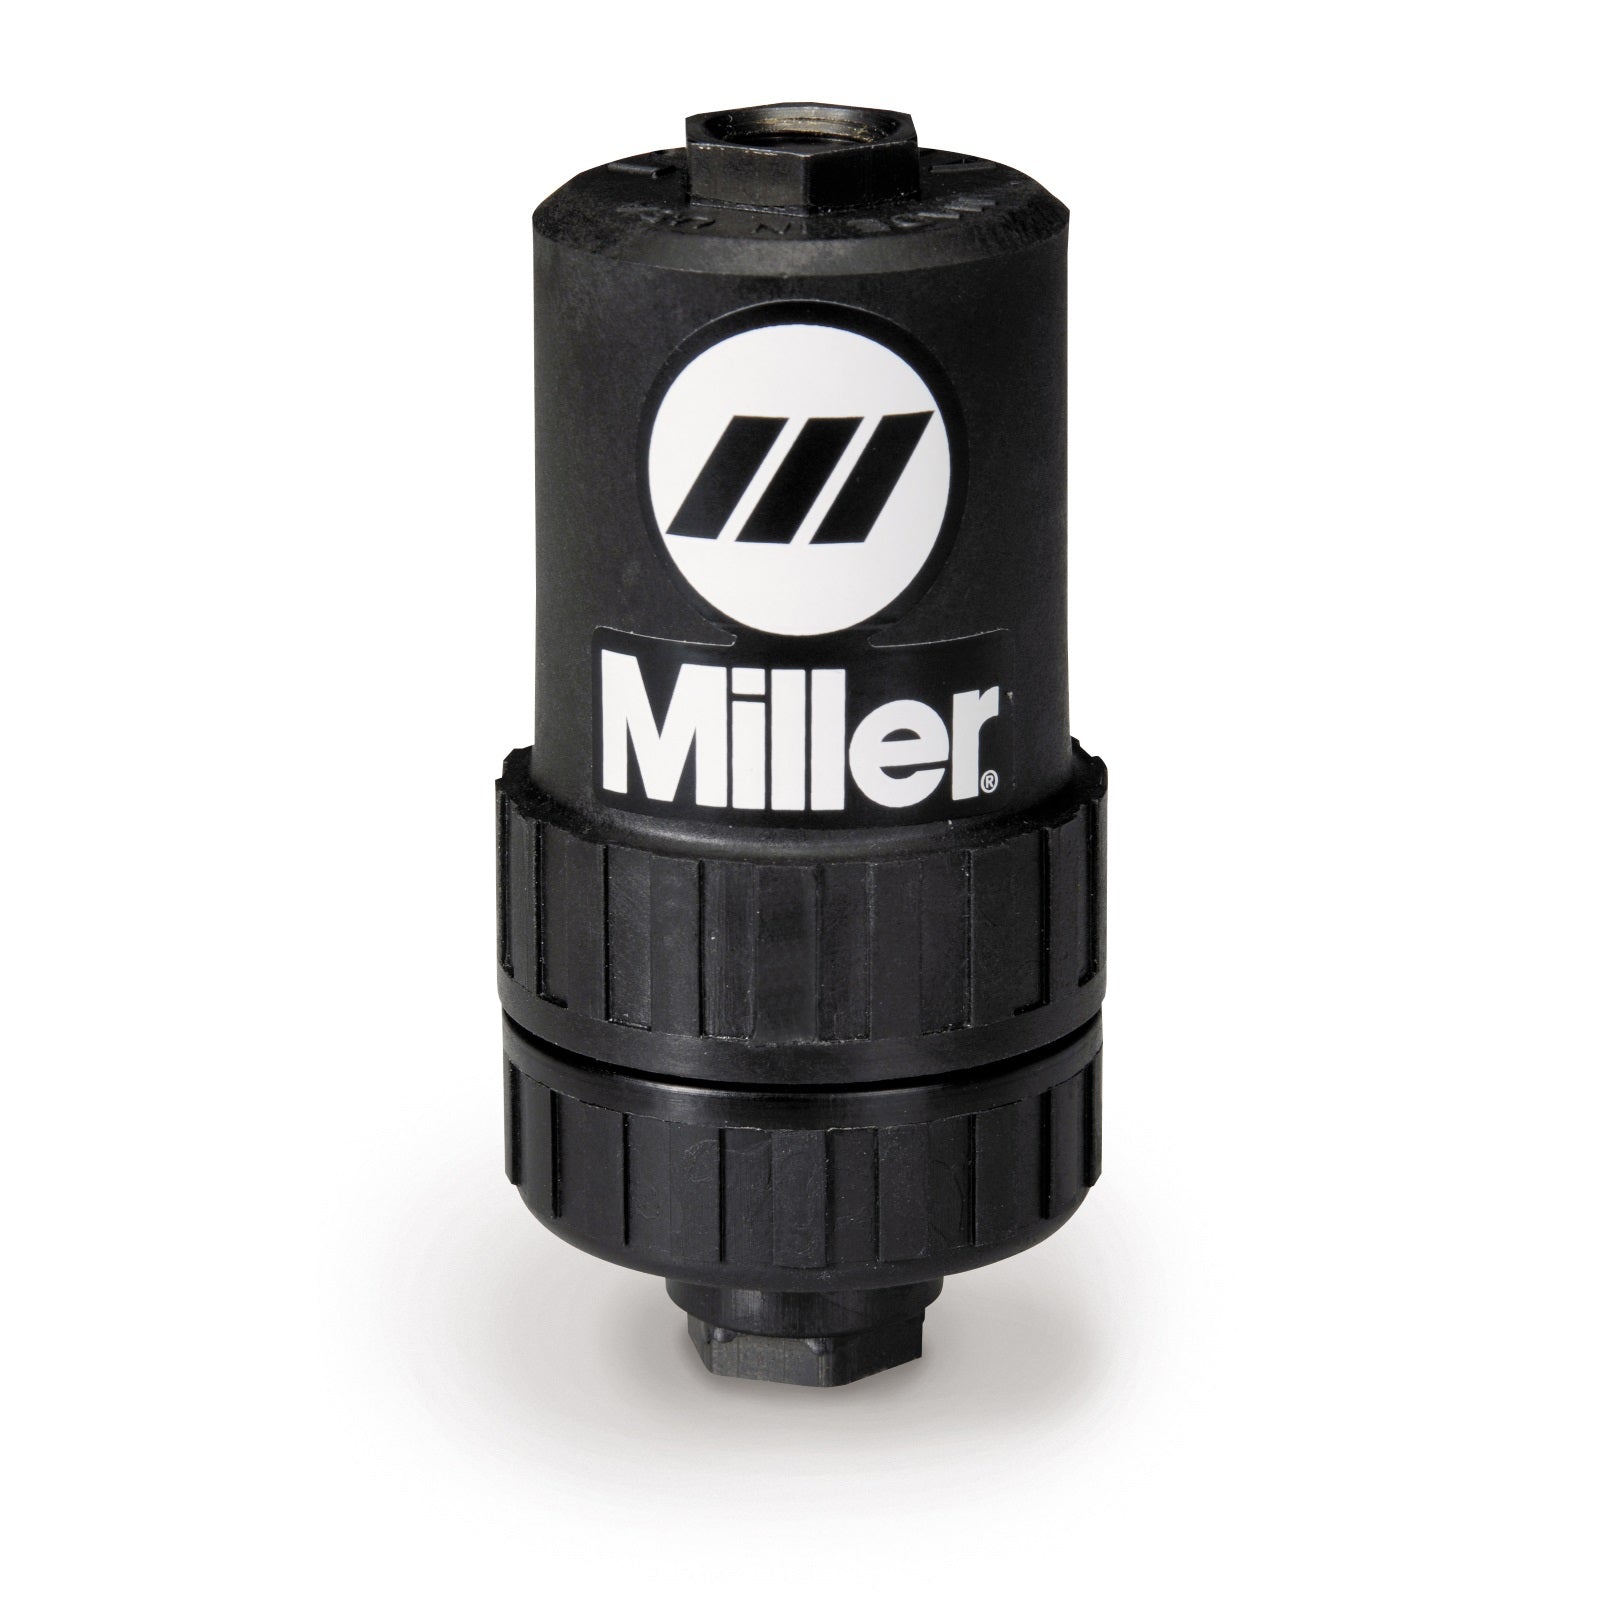 Miller Spectrum 375 X-Treme Plasma Cutter + Accessories (907529)